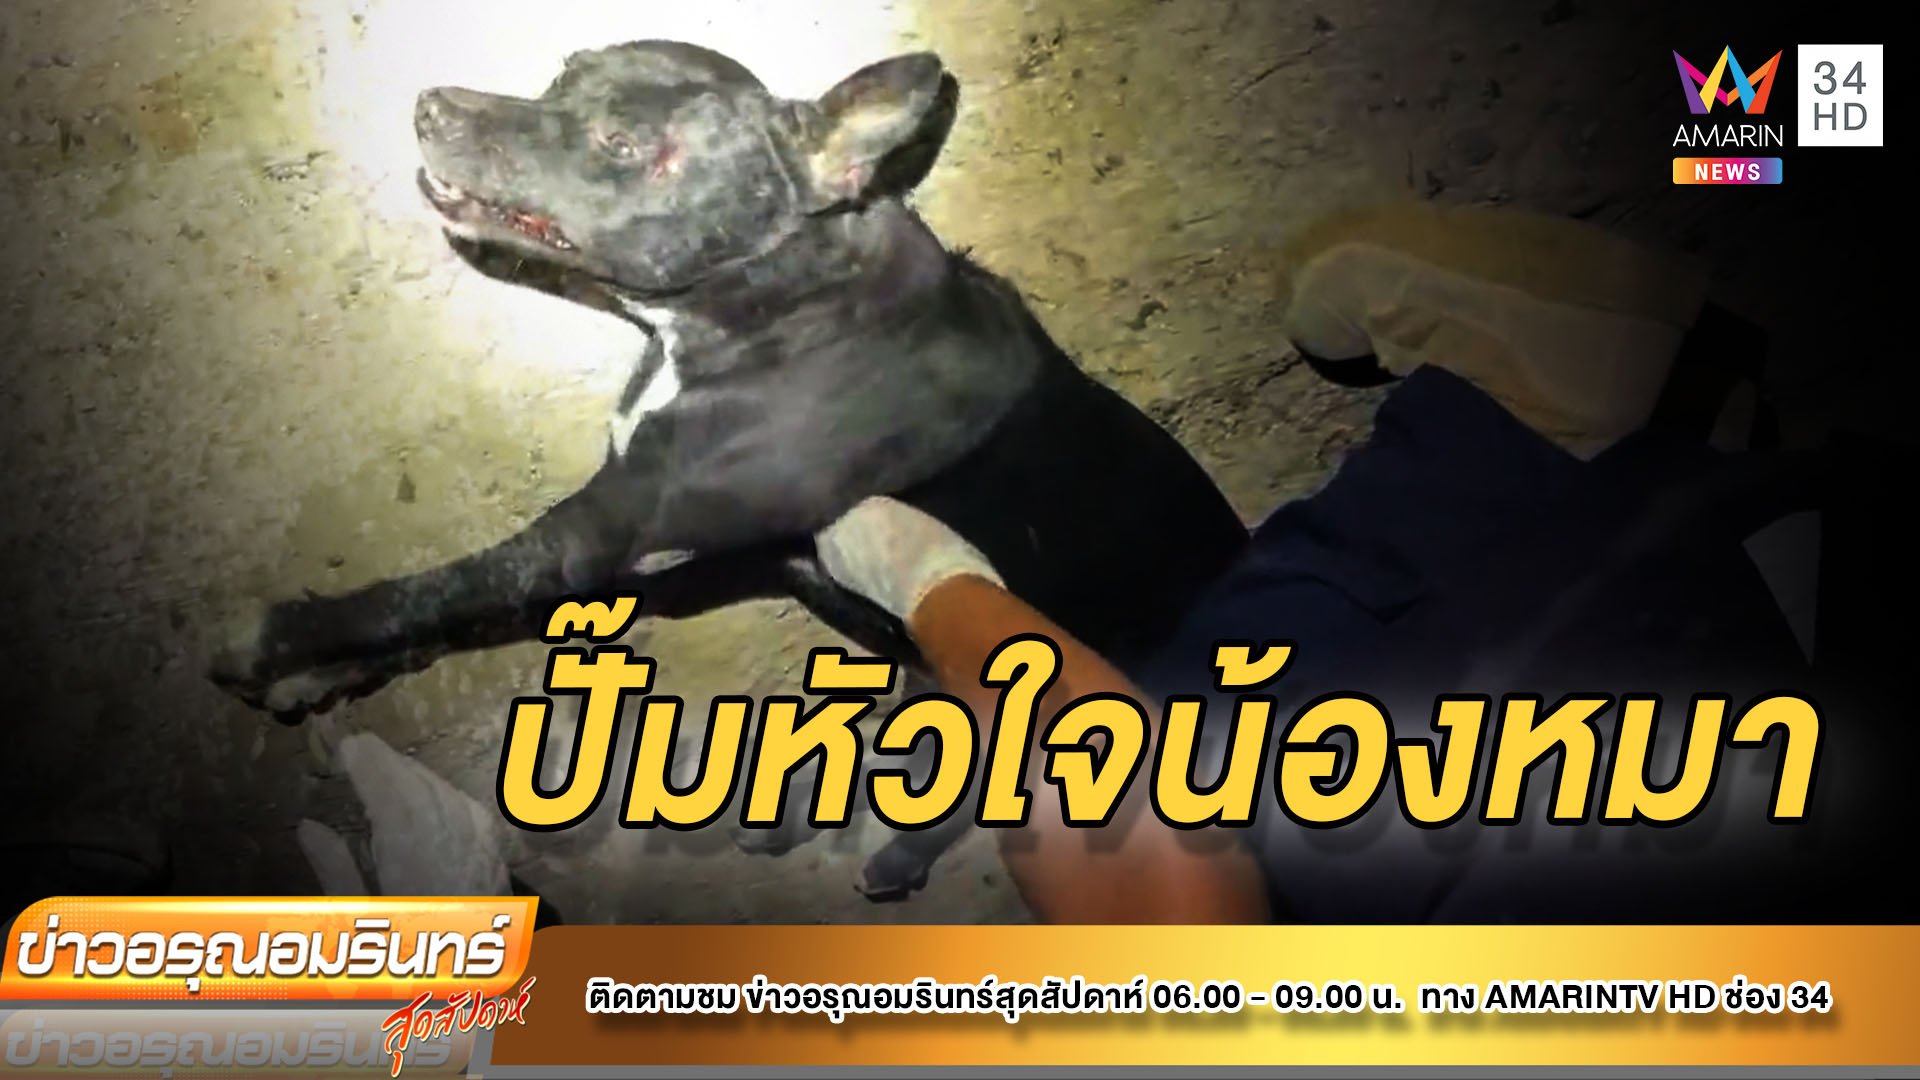 ชื่นชม! กู้ภัยเร่งปั๊มหัวใจช่วยชีวิตน้องหมาถูกรถชนจนฟื้น | ข่าวอรุณอมรินทร์ | 19 ธ.ค. 64 | AMARIN TVHD34